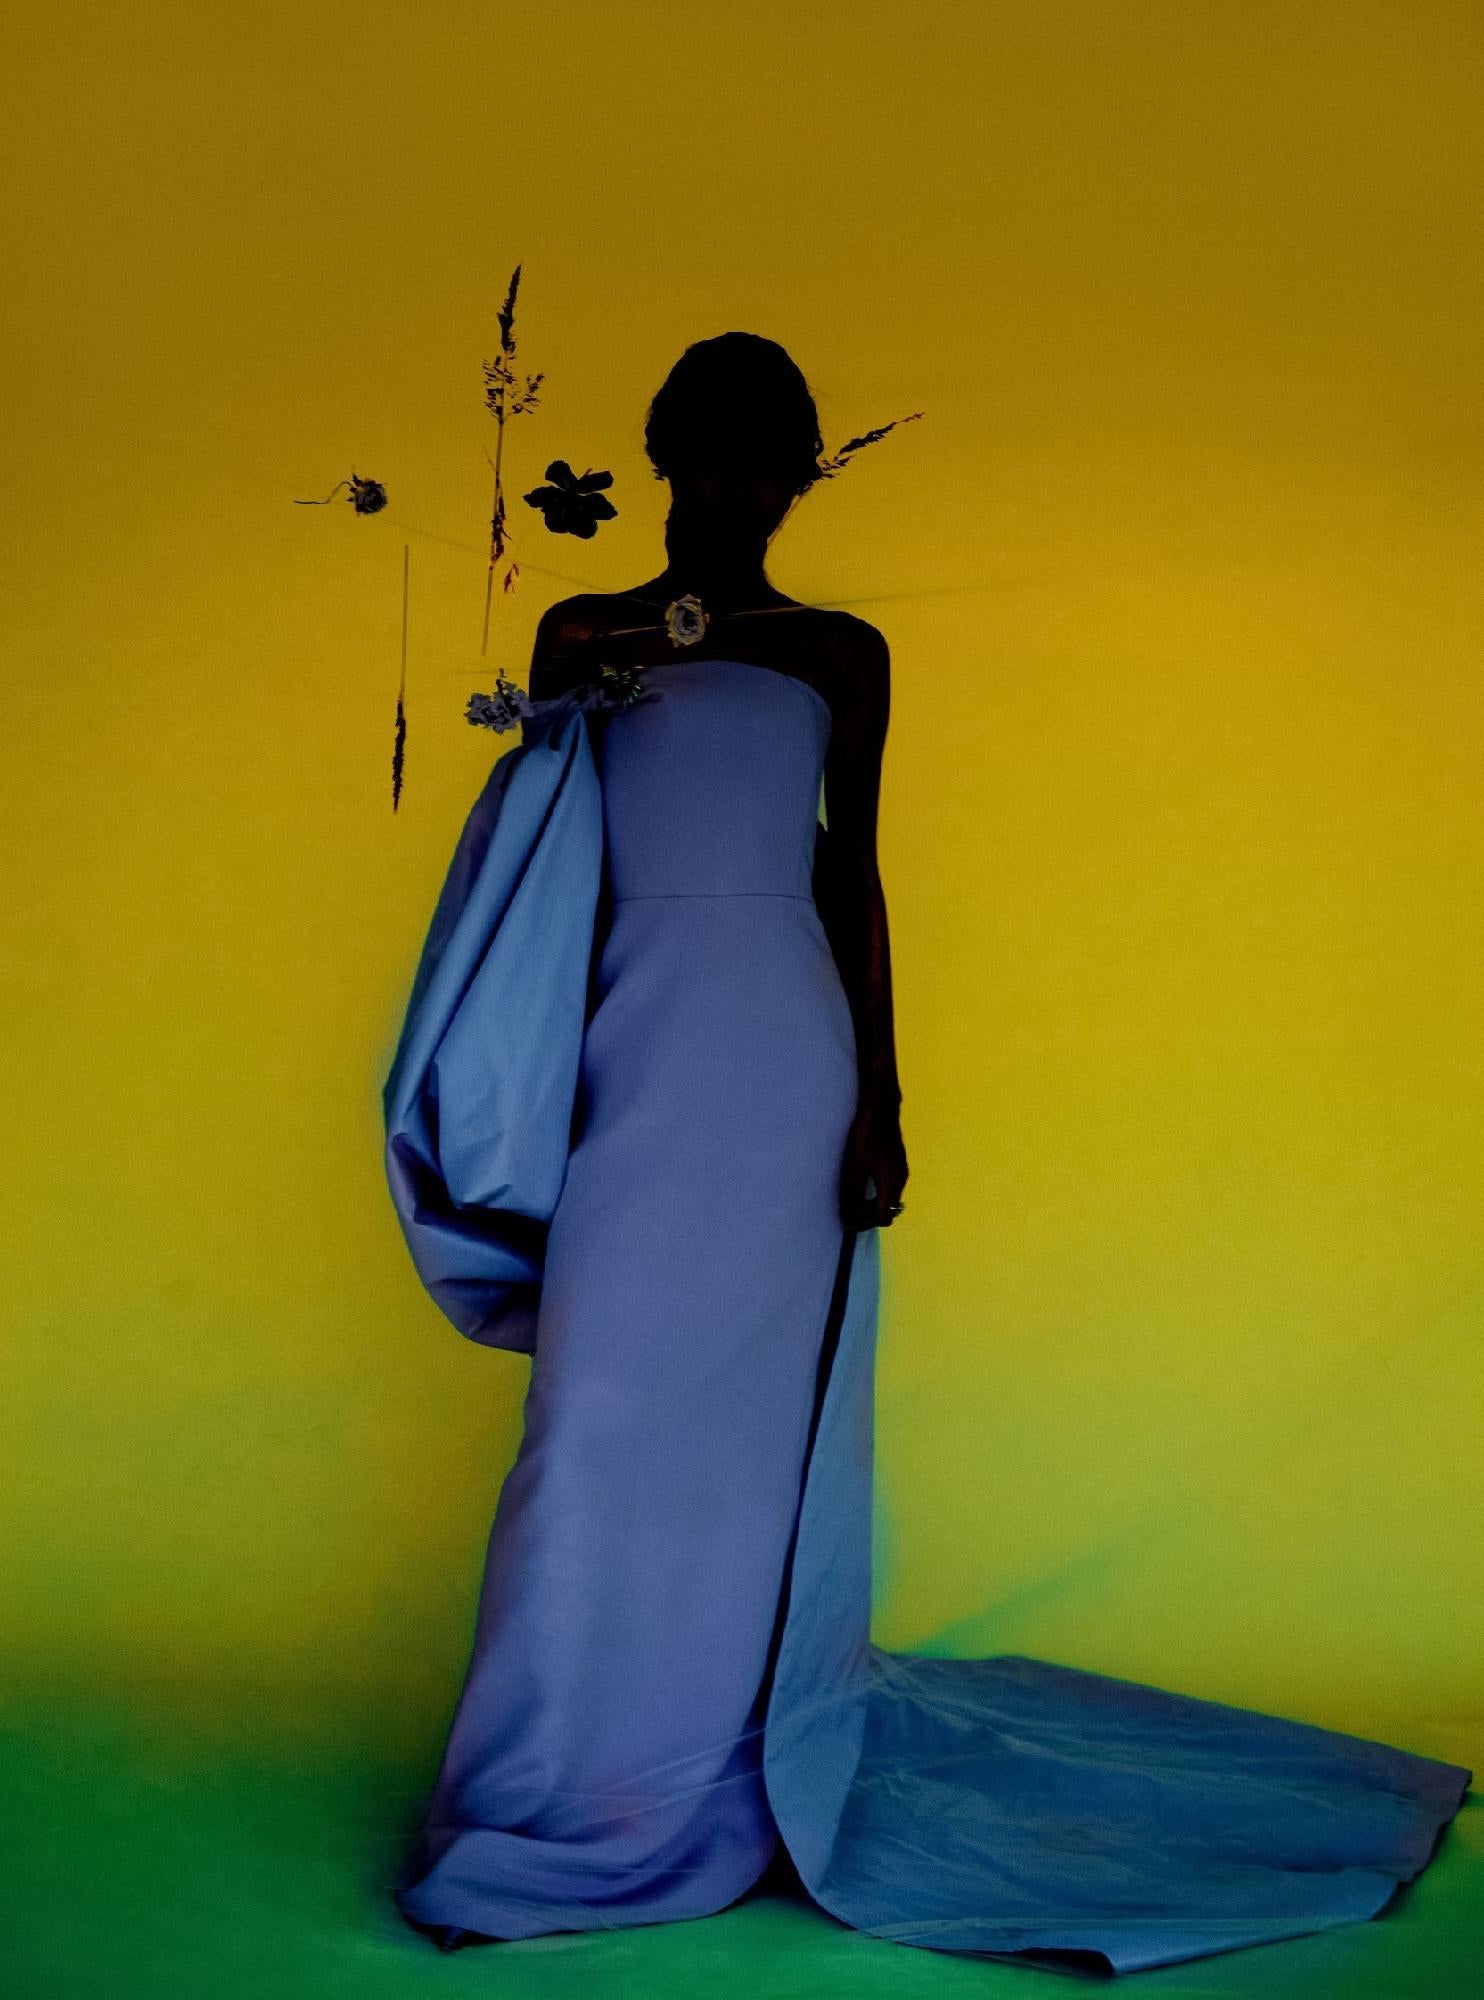 Not titled yet, 2022 – Erik Madigan Heck, Fashion, Dress, Human, Abstract, Art